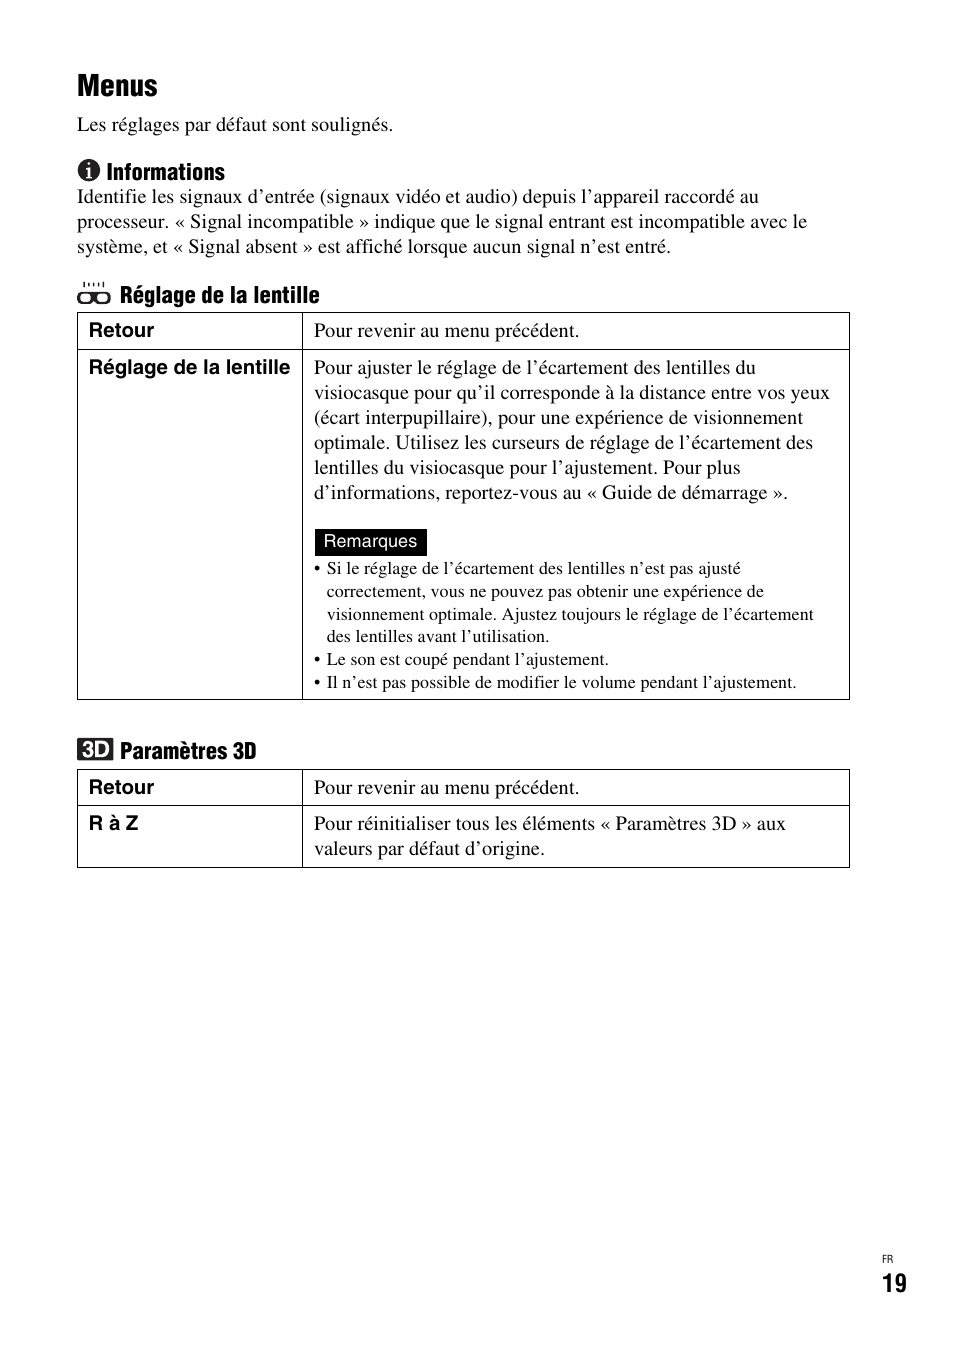 Menus | Sony HMZ-T1 Manual del usuario | Página 19 / 68